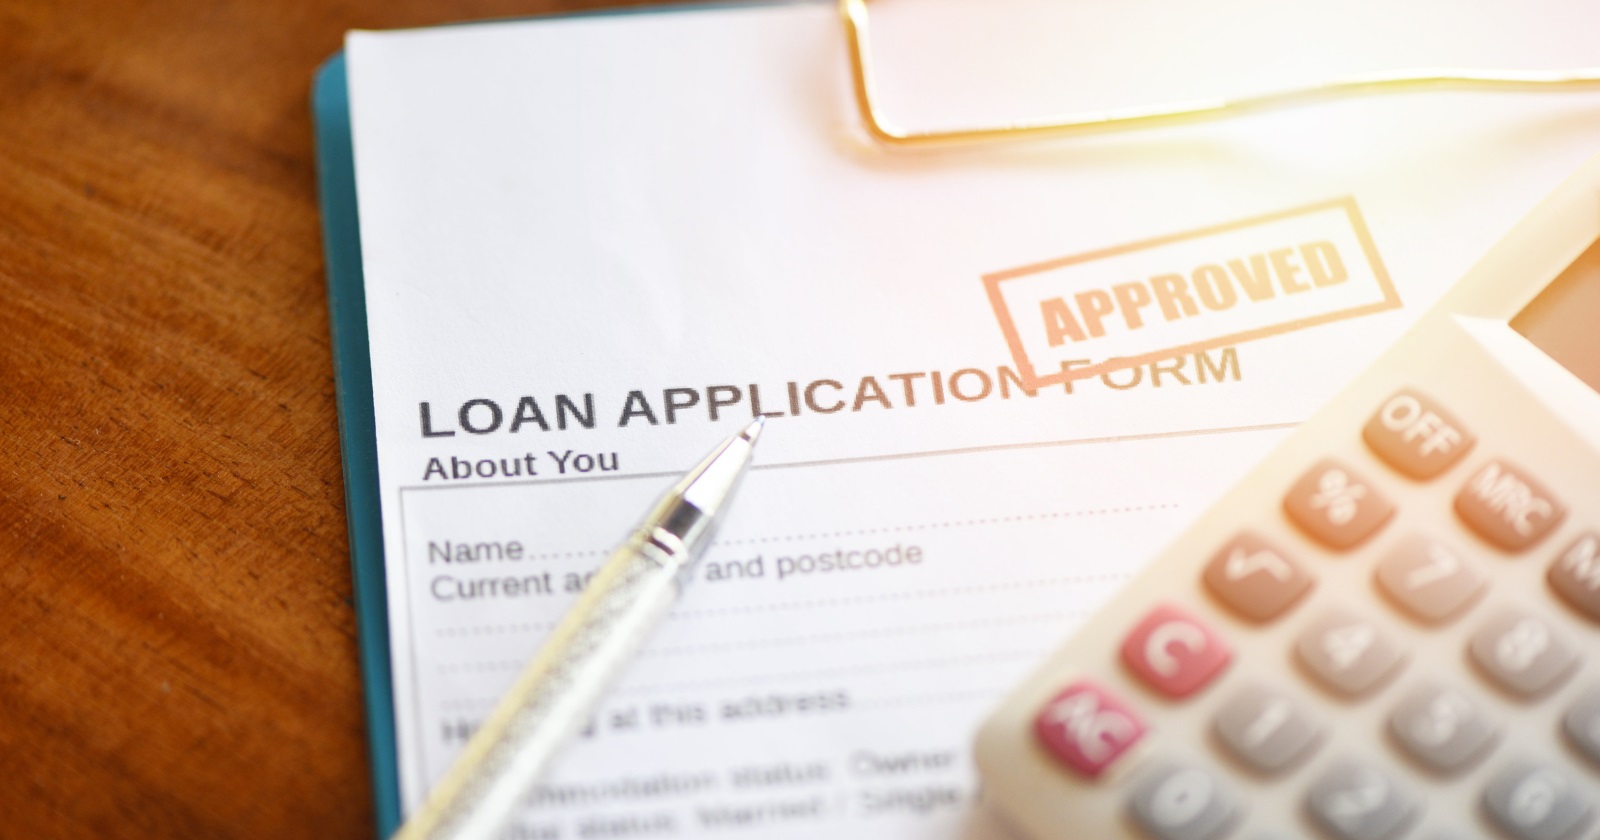 Pink slip loan application